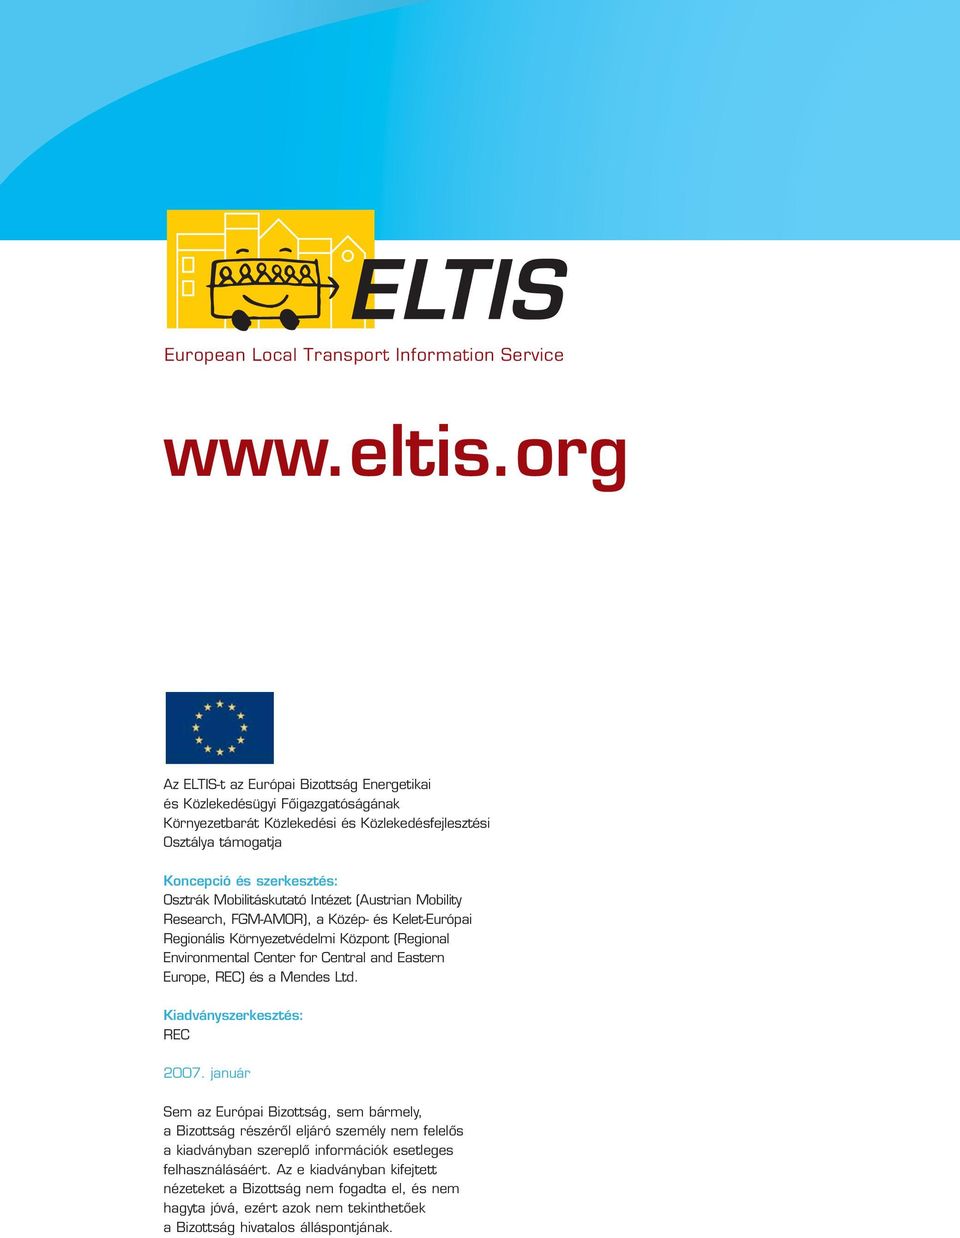 Mobilitáskutató Intézet (Austrian Mobility Research, FGM-AMOR), a Közép- és Kelet-Európai Regionális Környezetvédelmi Központ (Regional Environmental Center for Central and Eastern Europe, REC) és a